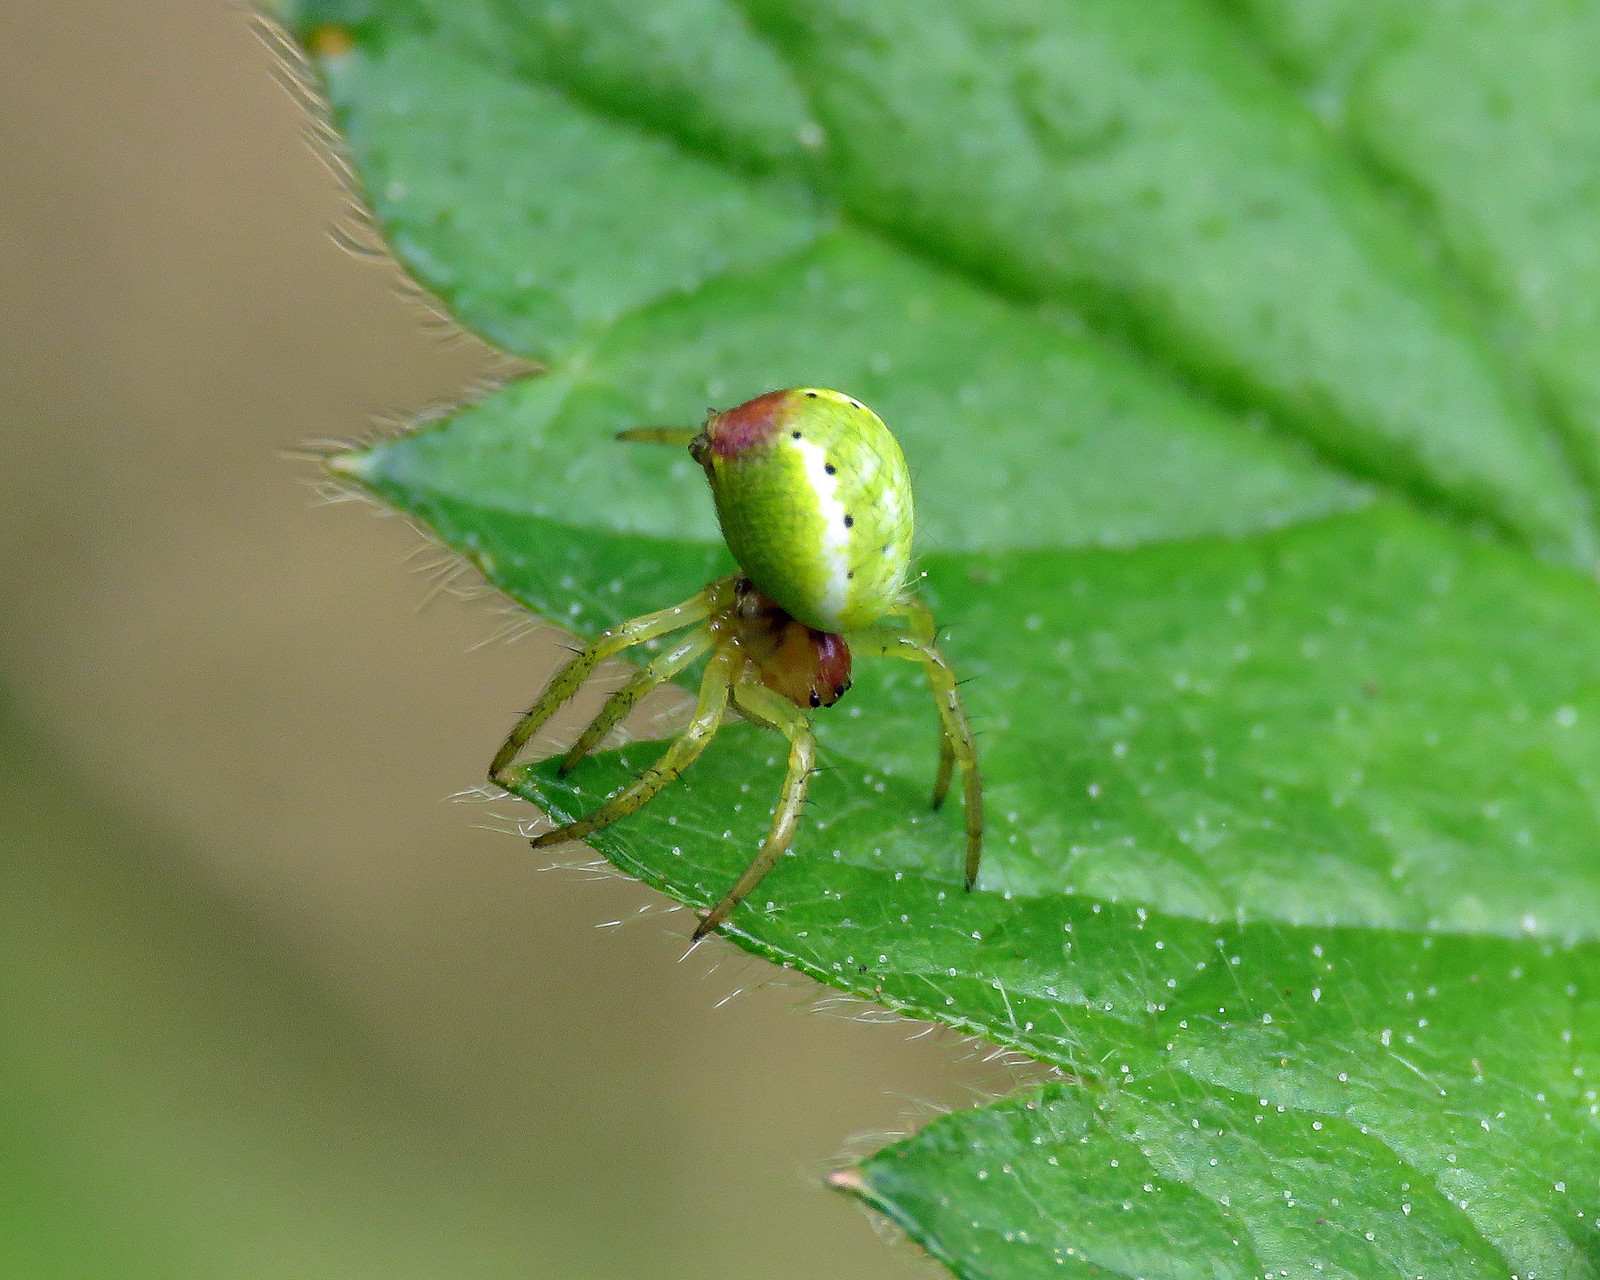 Cucumber Spider - Araniella cucurbitina sensu lato